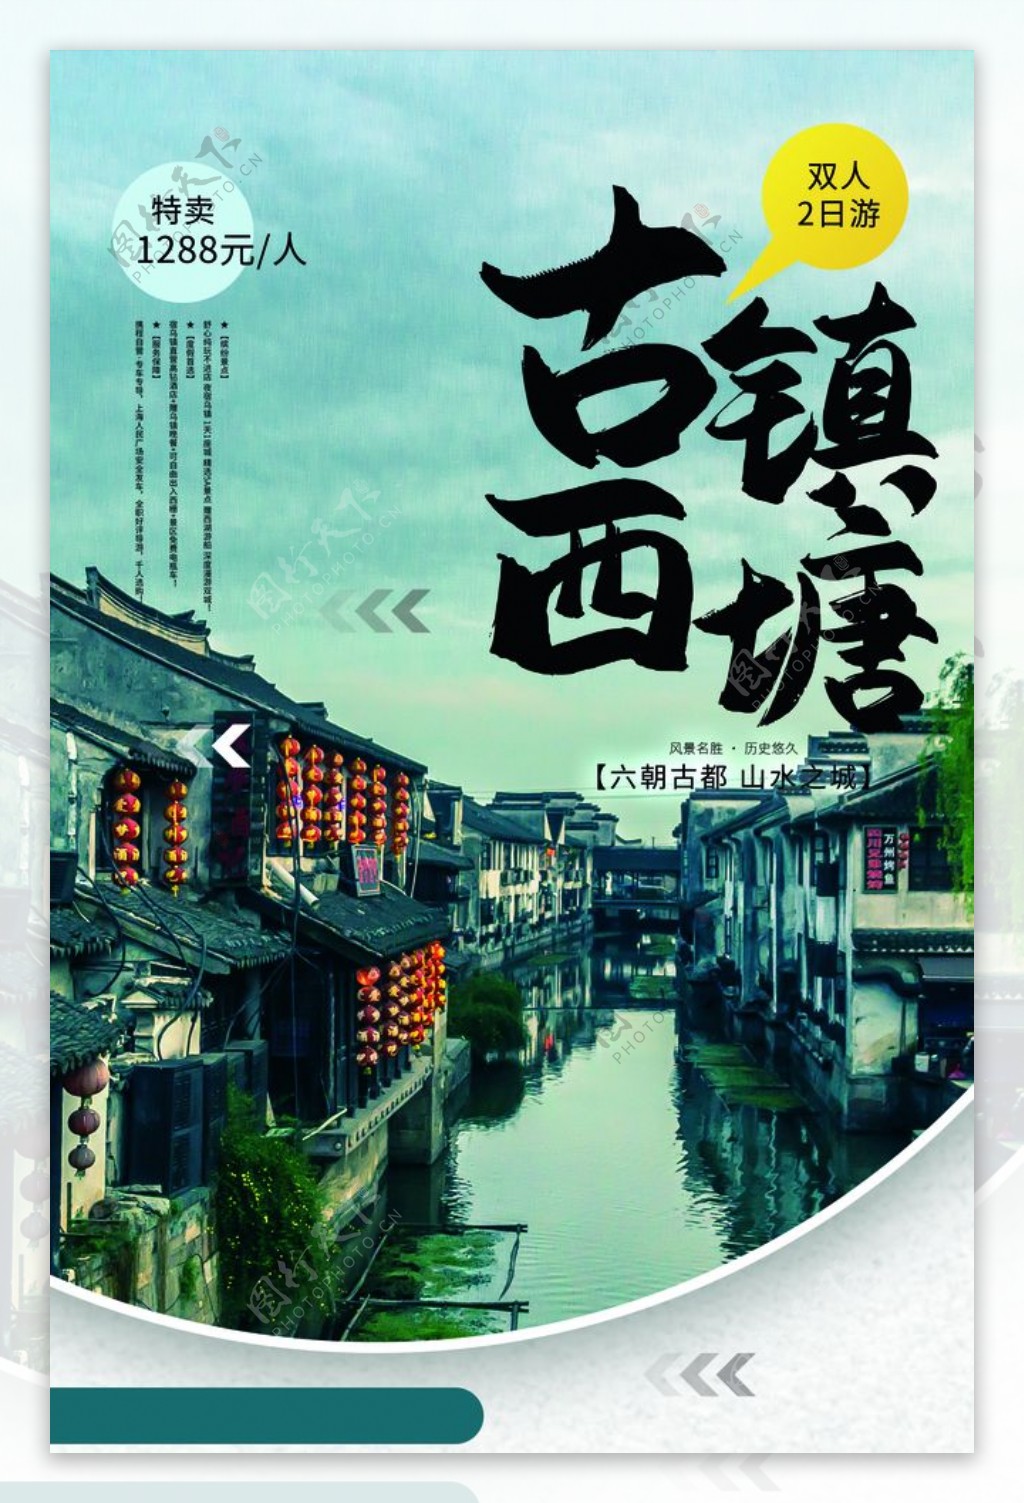 古镇西塘旅游活动促销海报素材